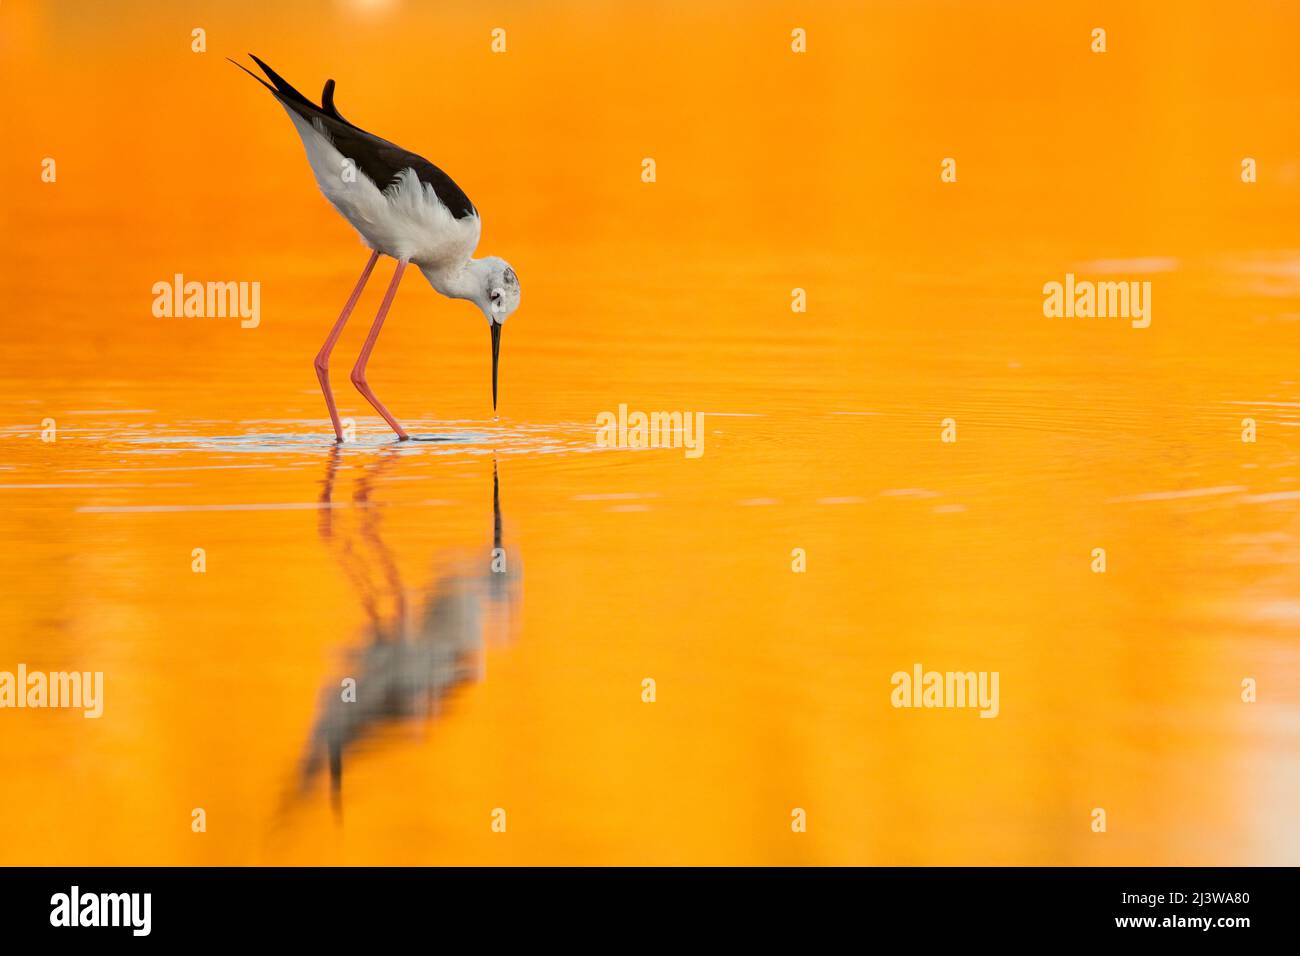 Mâle à ailes noires (Himantopus himantopus) barboter dans l'eau un coucher de soleil orange colore l'eau et la réflexion des oiseaux. Photographié en Israël dans Banque D'Images